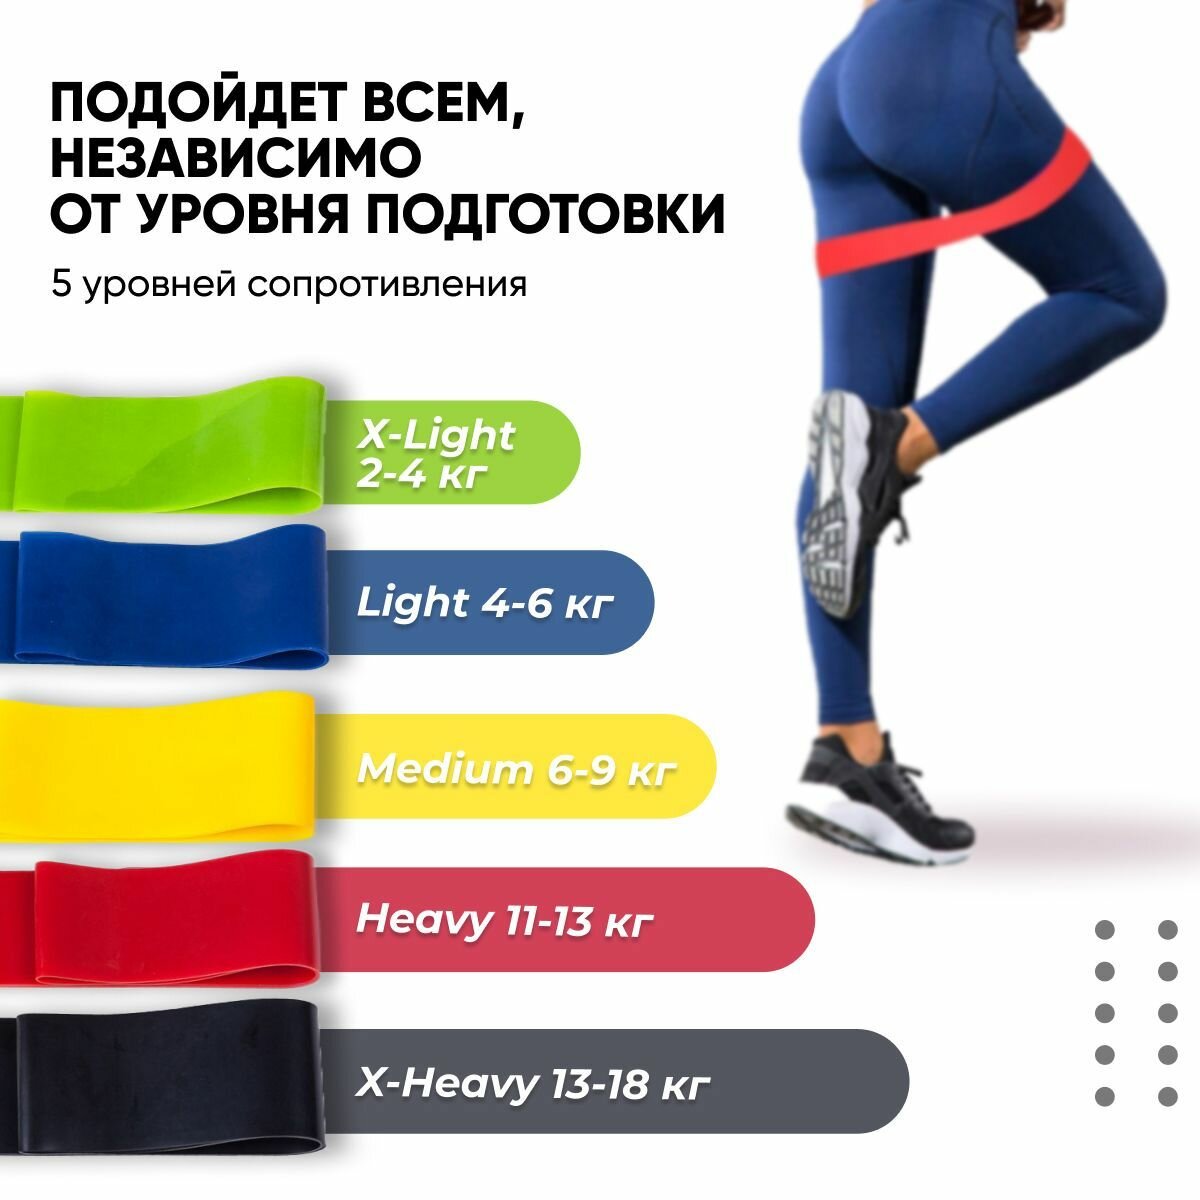 Резинки для фитнеса HARBR FITNESS для тренировок ног и рук, набор из 5 штук, эспандер восьмерка в подарок